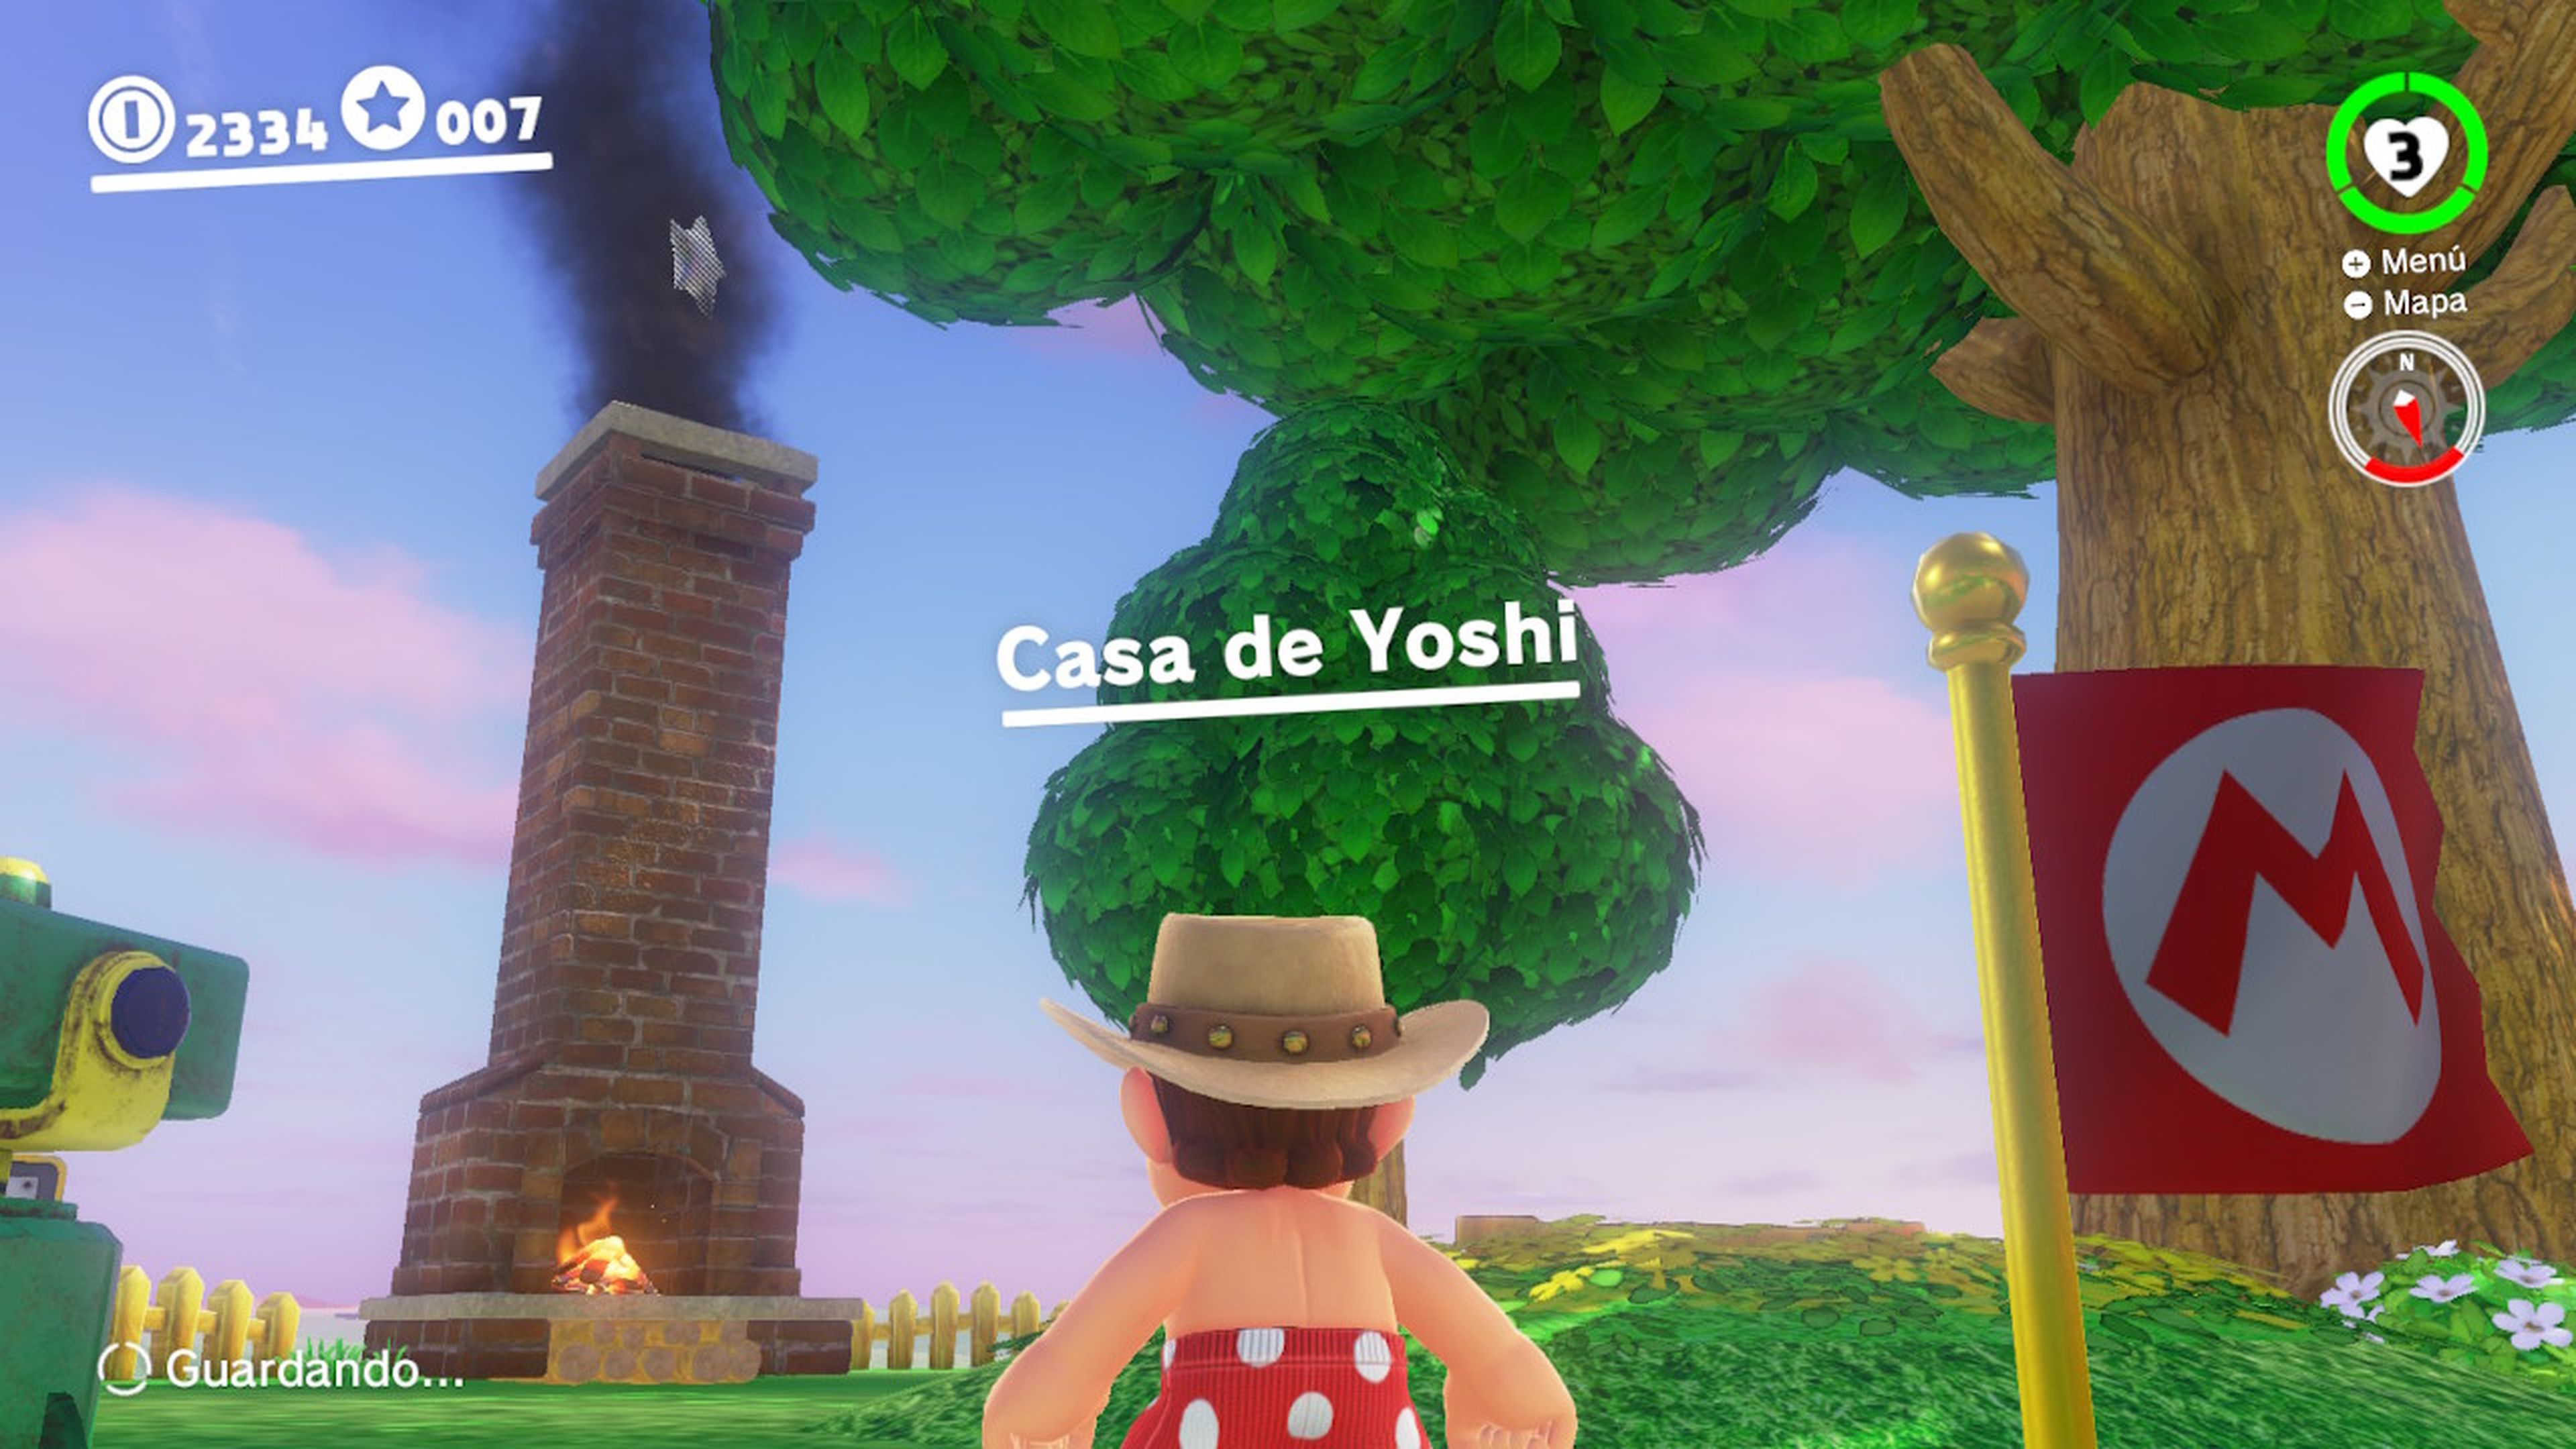 Casa de Yoshi en Super Mario Odyssey